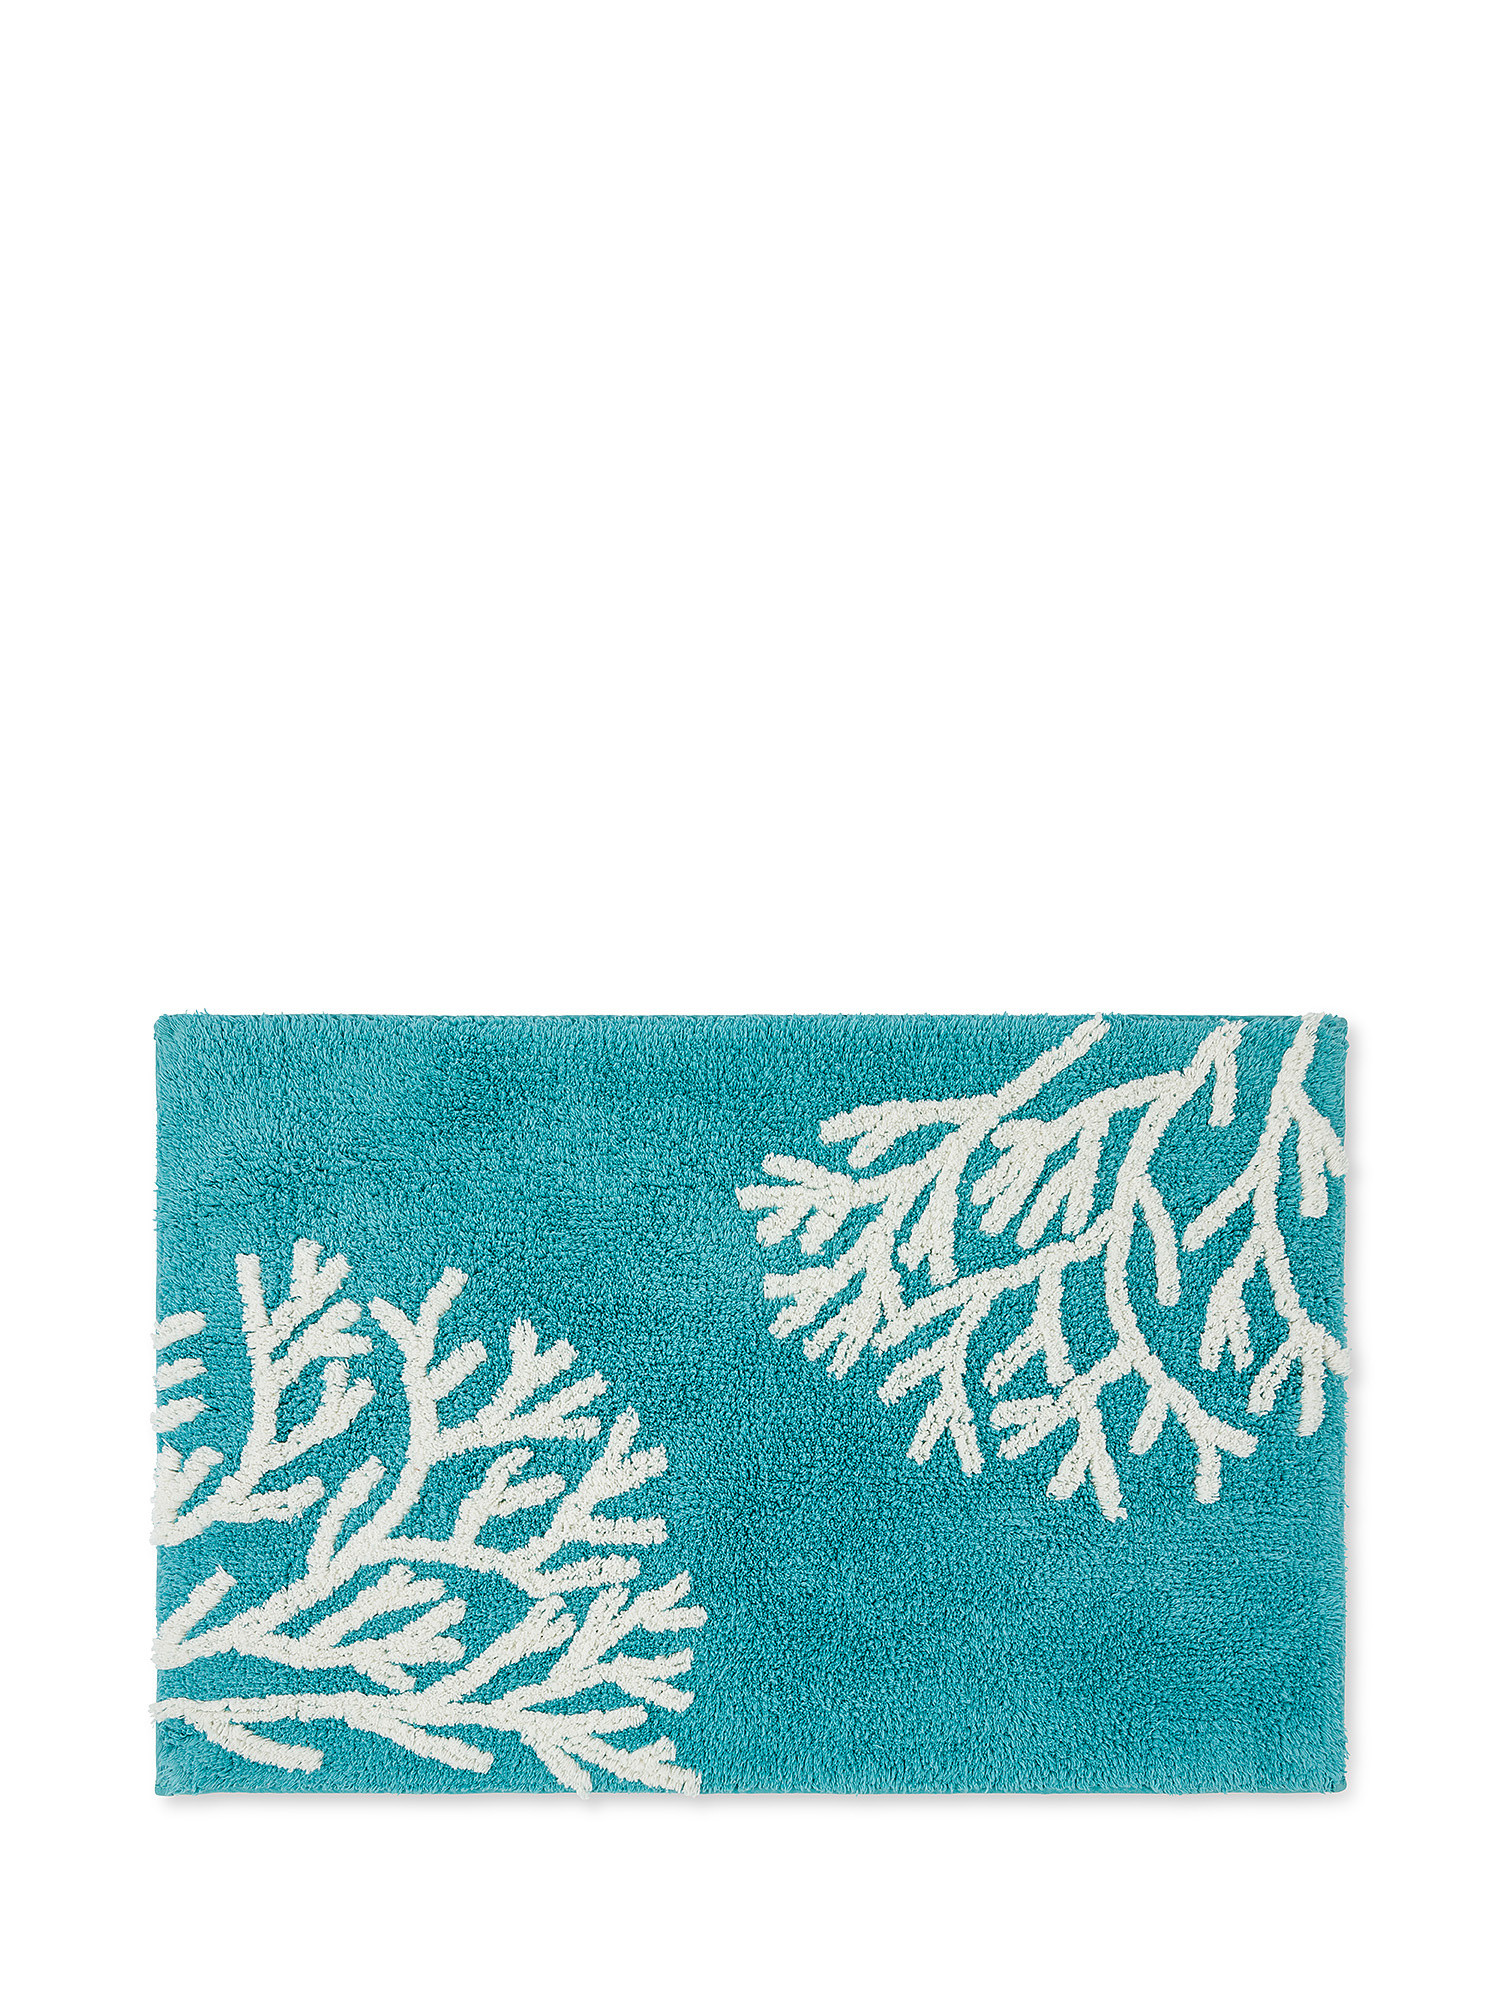 Tappeto bagno in cotone motivo coralli, Azzurro, large image number 0